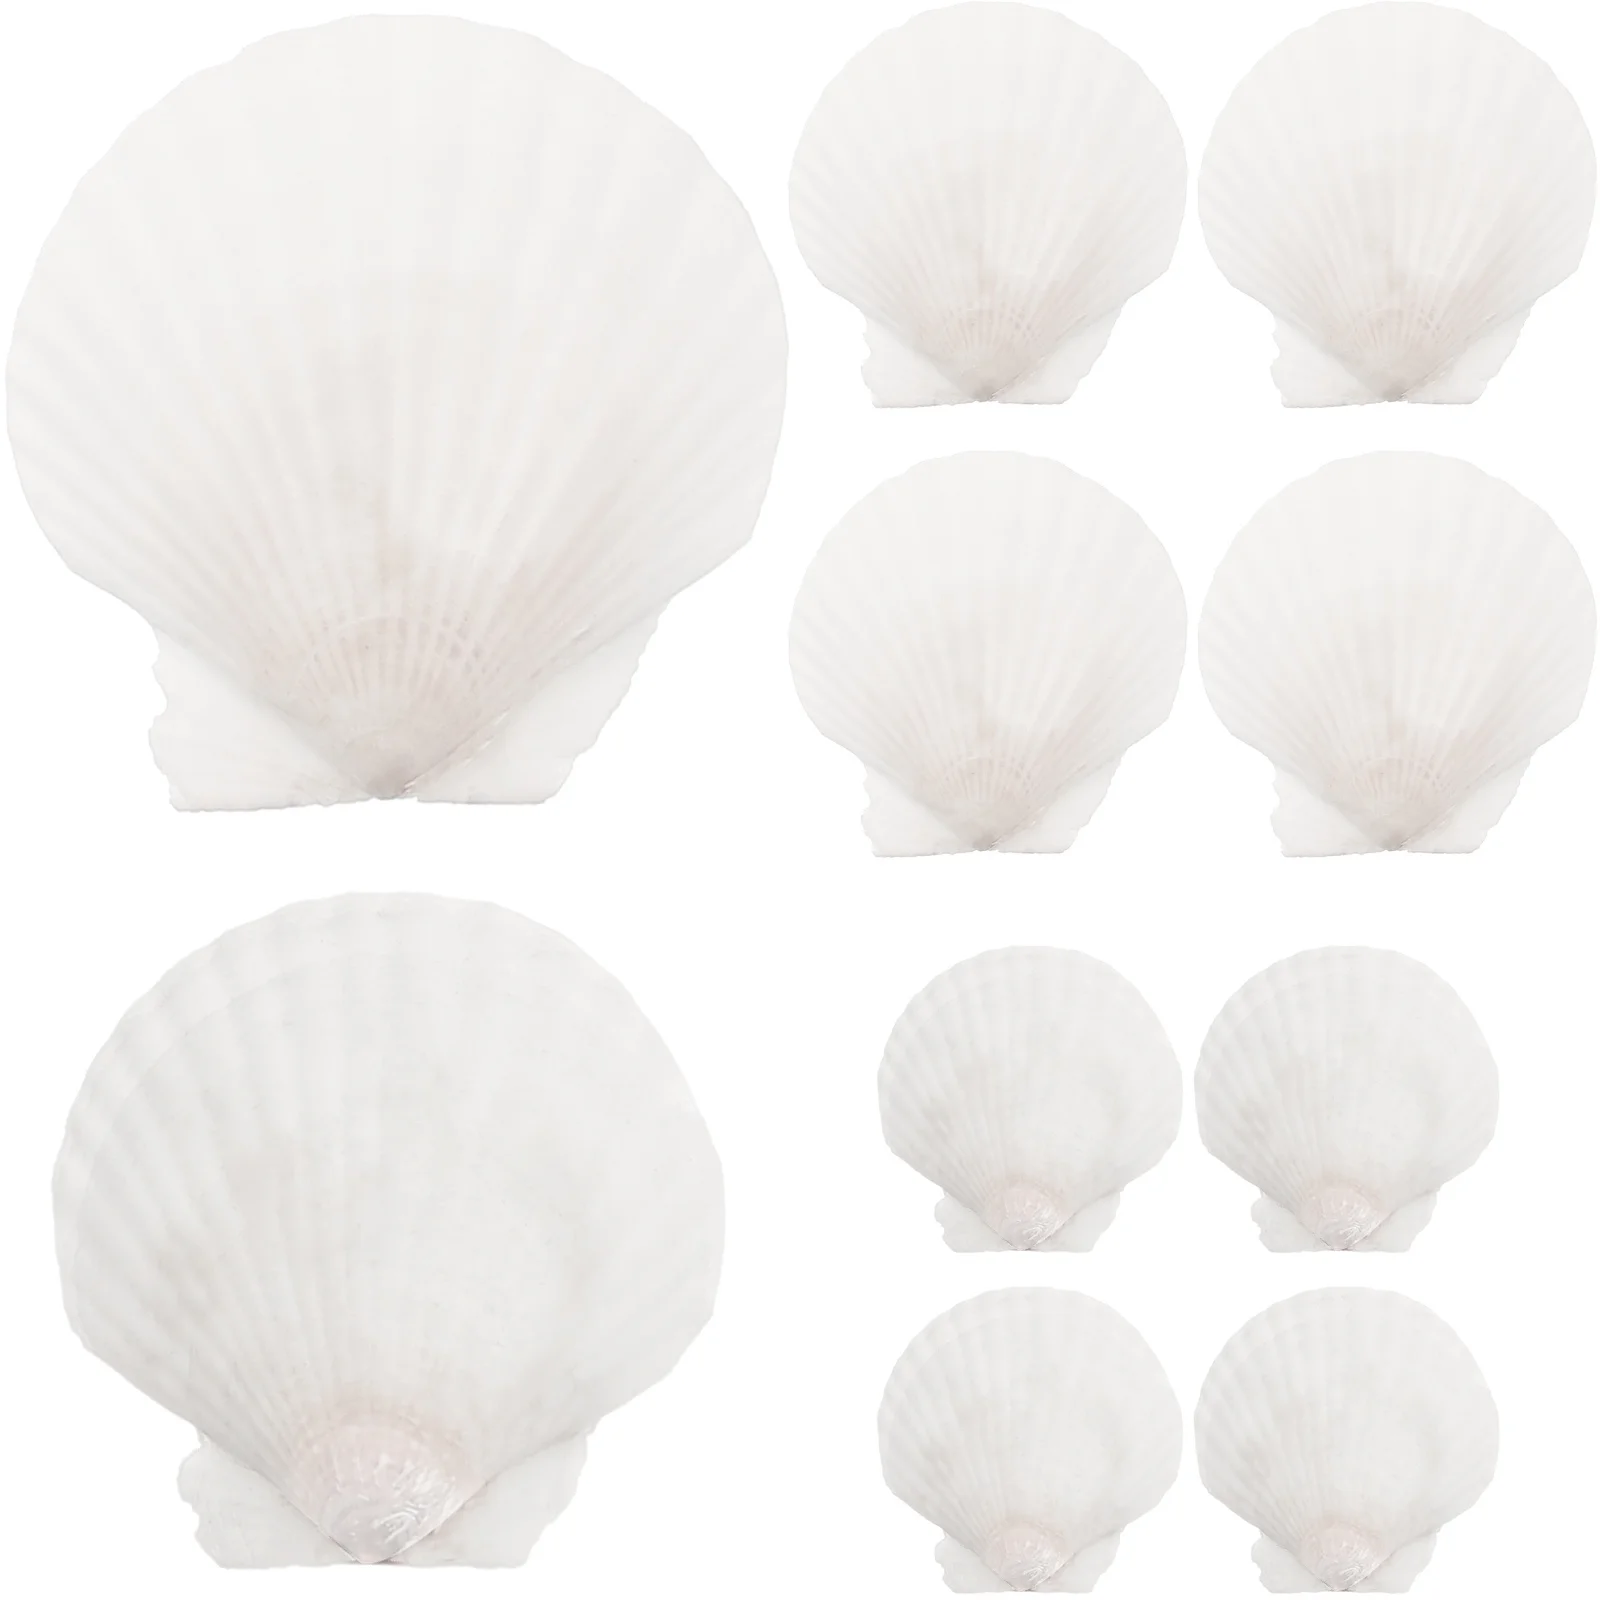 

Decorative Crafting Shell White Scallops Natural Shell Beach Seashells Handicraft White Shell White Shell shells